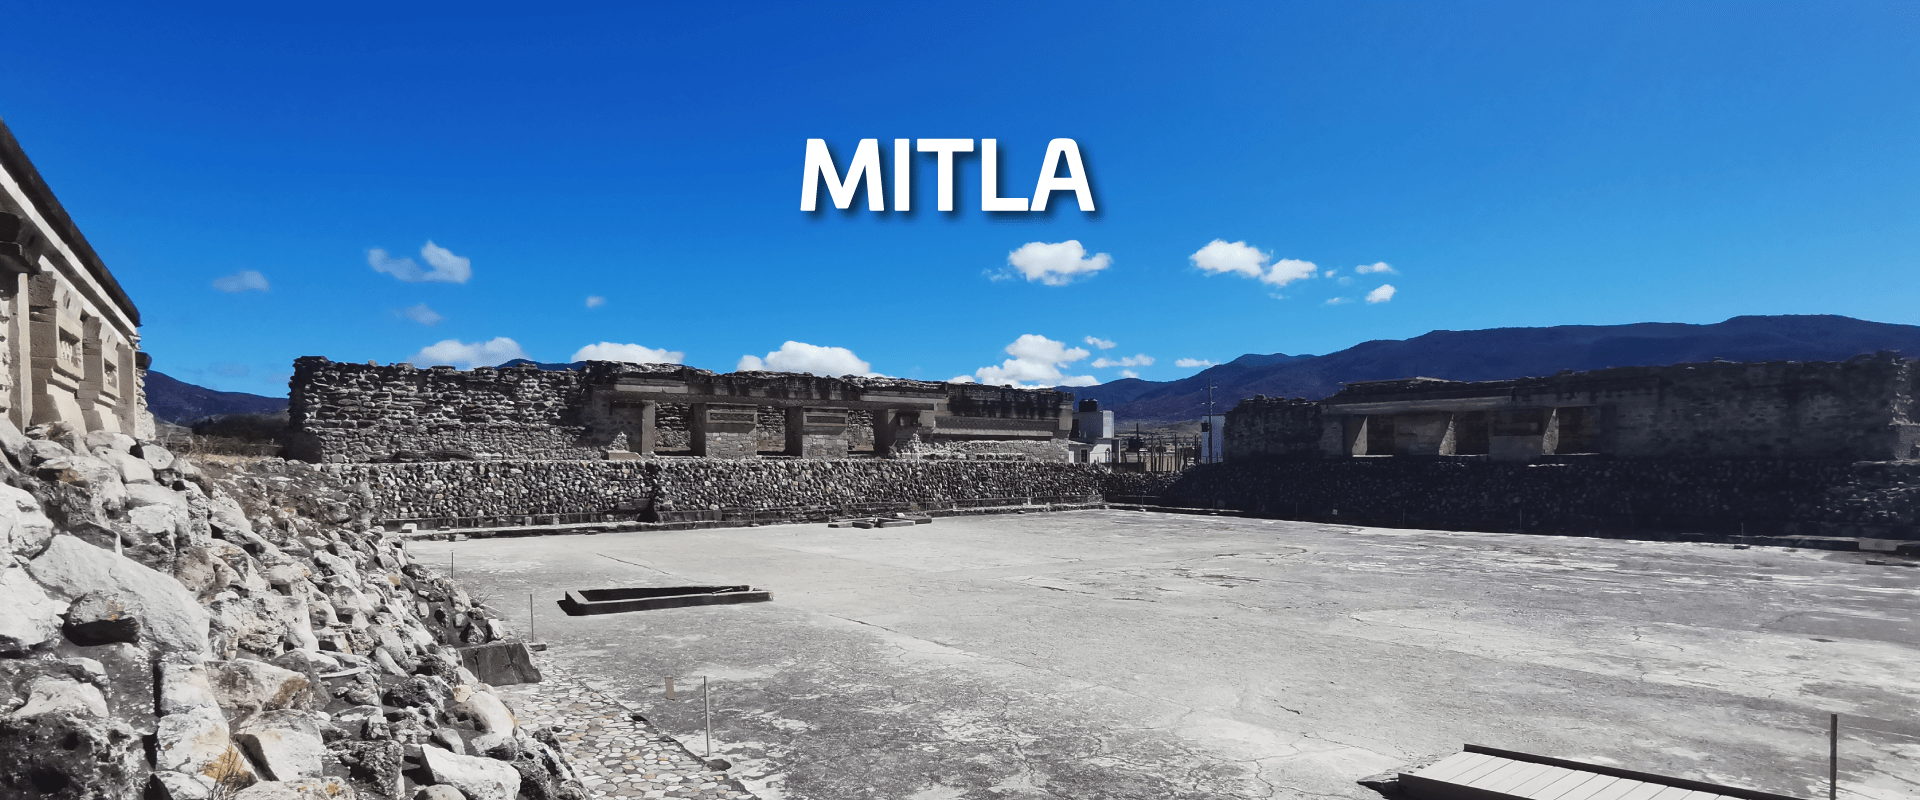 Mitla